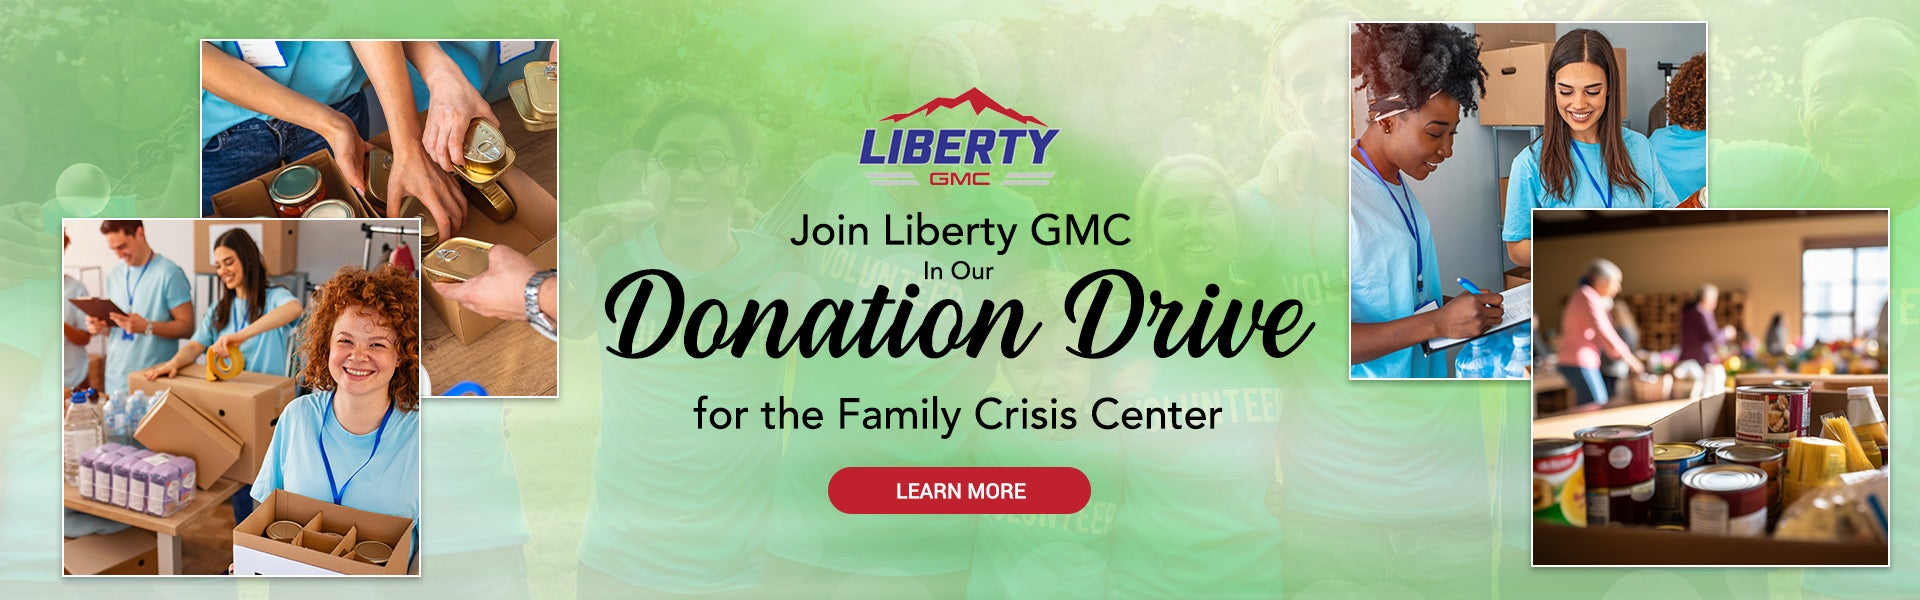 Liberty GMC Donation Drive